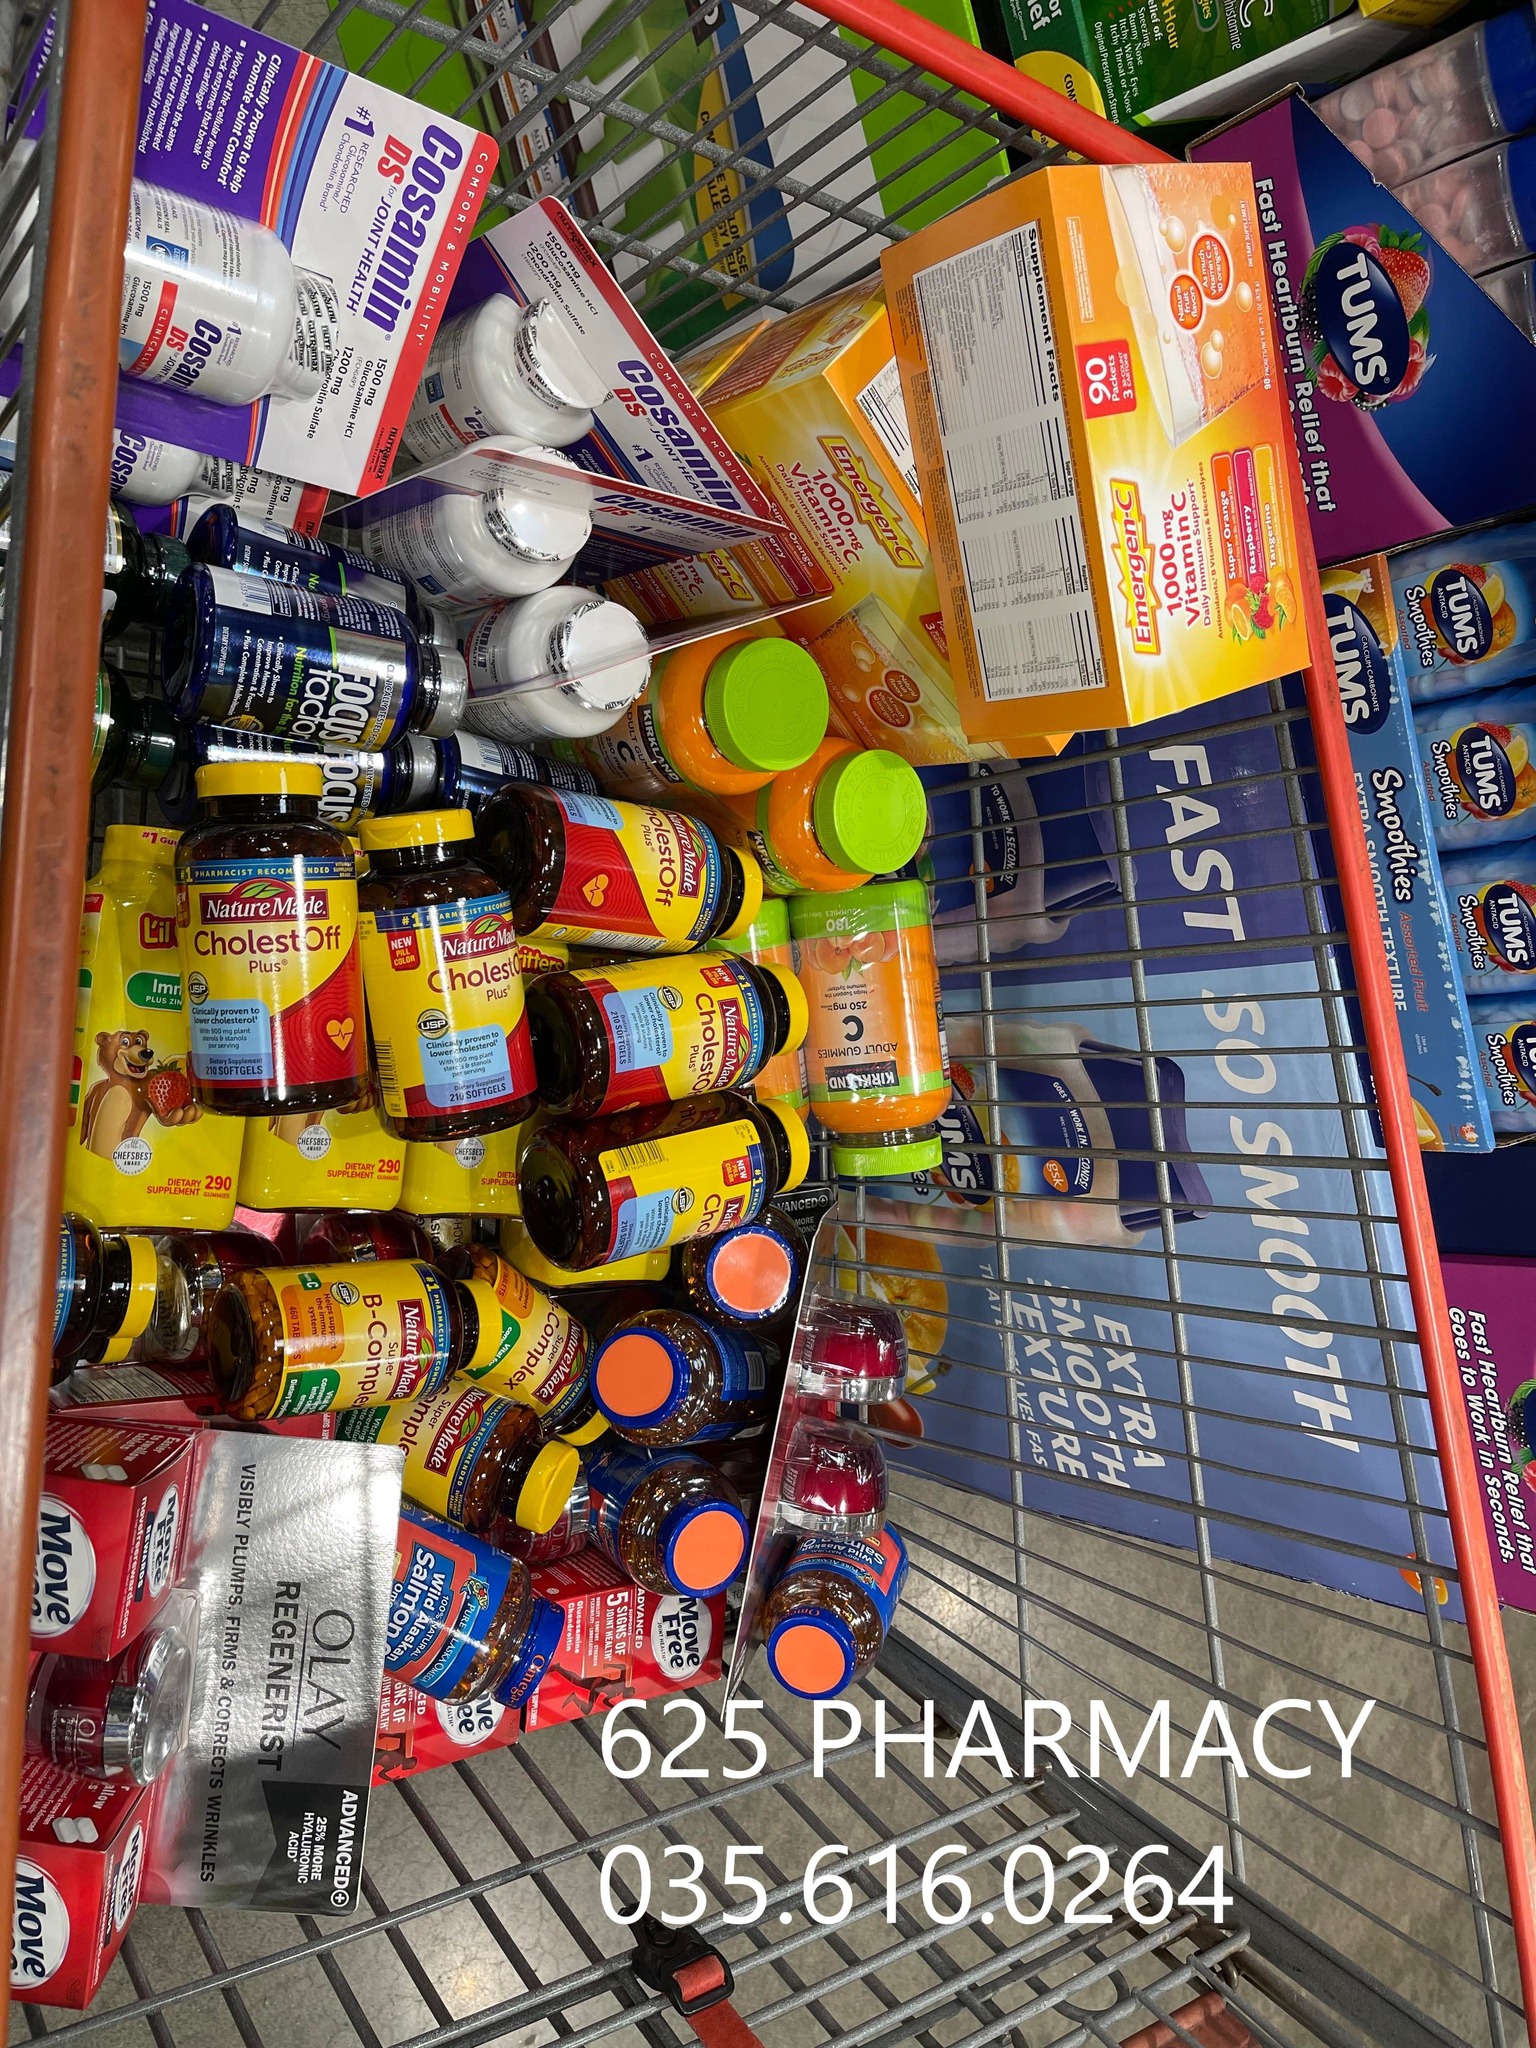 625 Pharmacy - Nhà thuốc Văn Hoàng ảnh 1